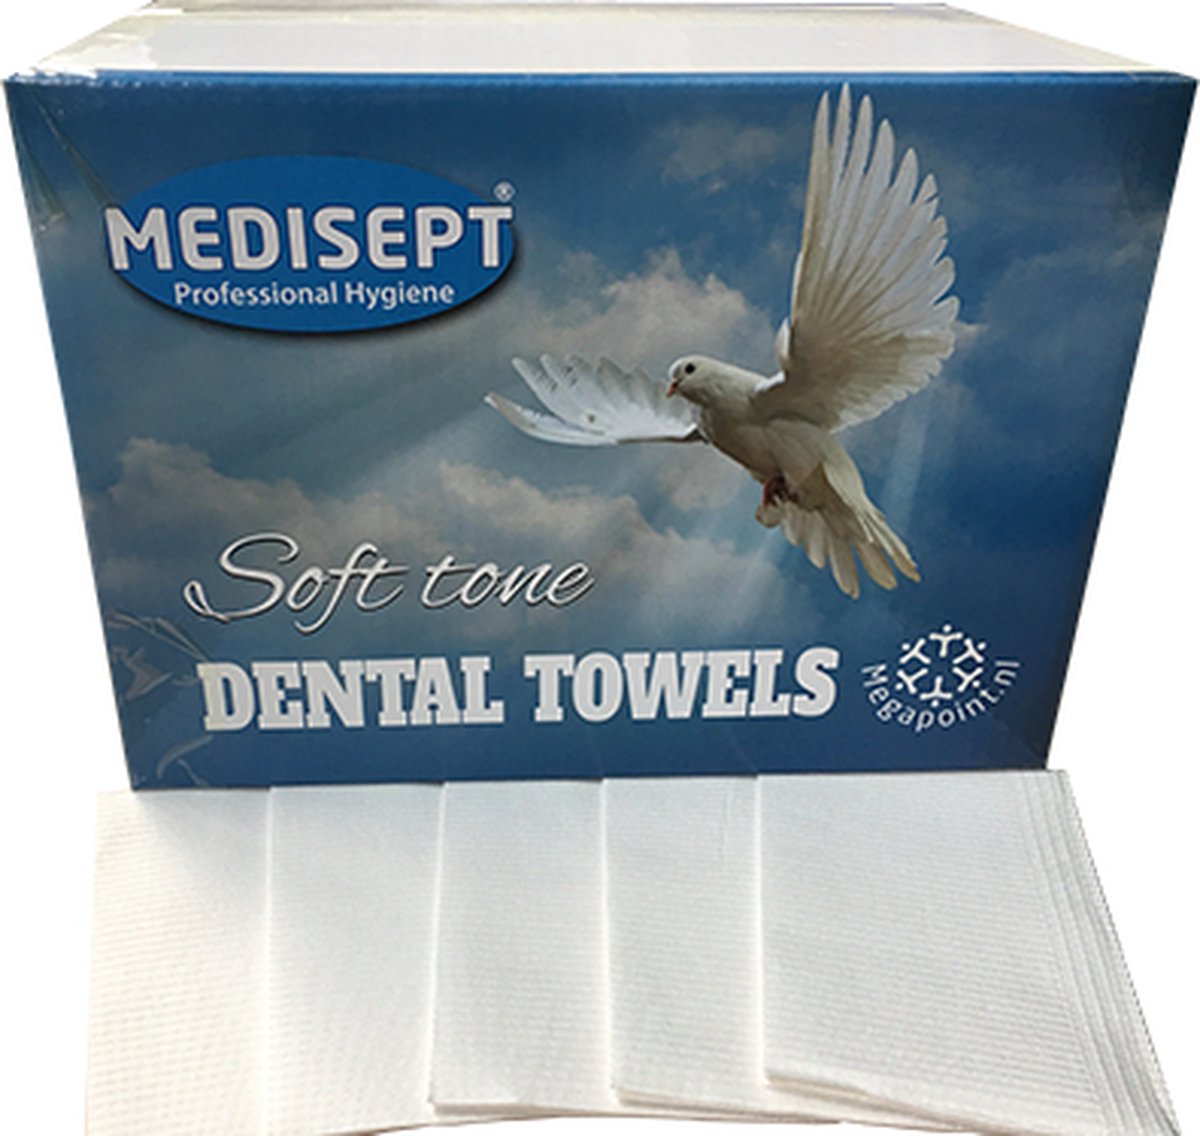 Dental Towels Soft Tone (Medisept) Kleur wit